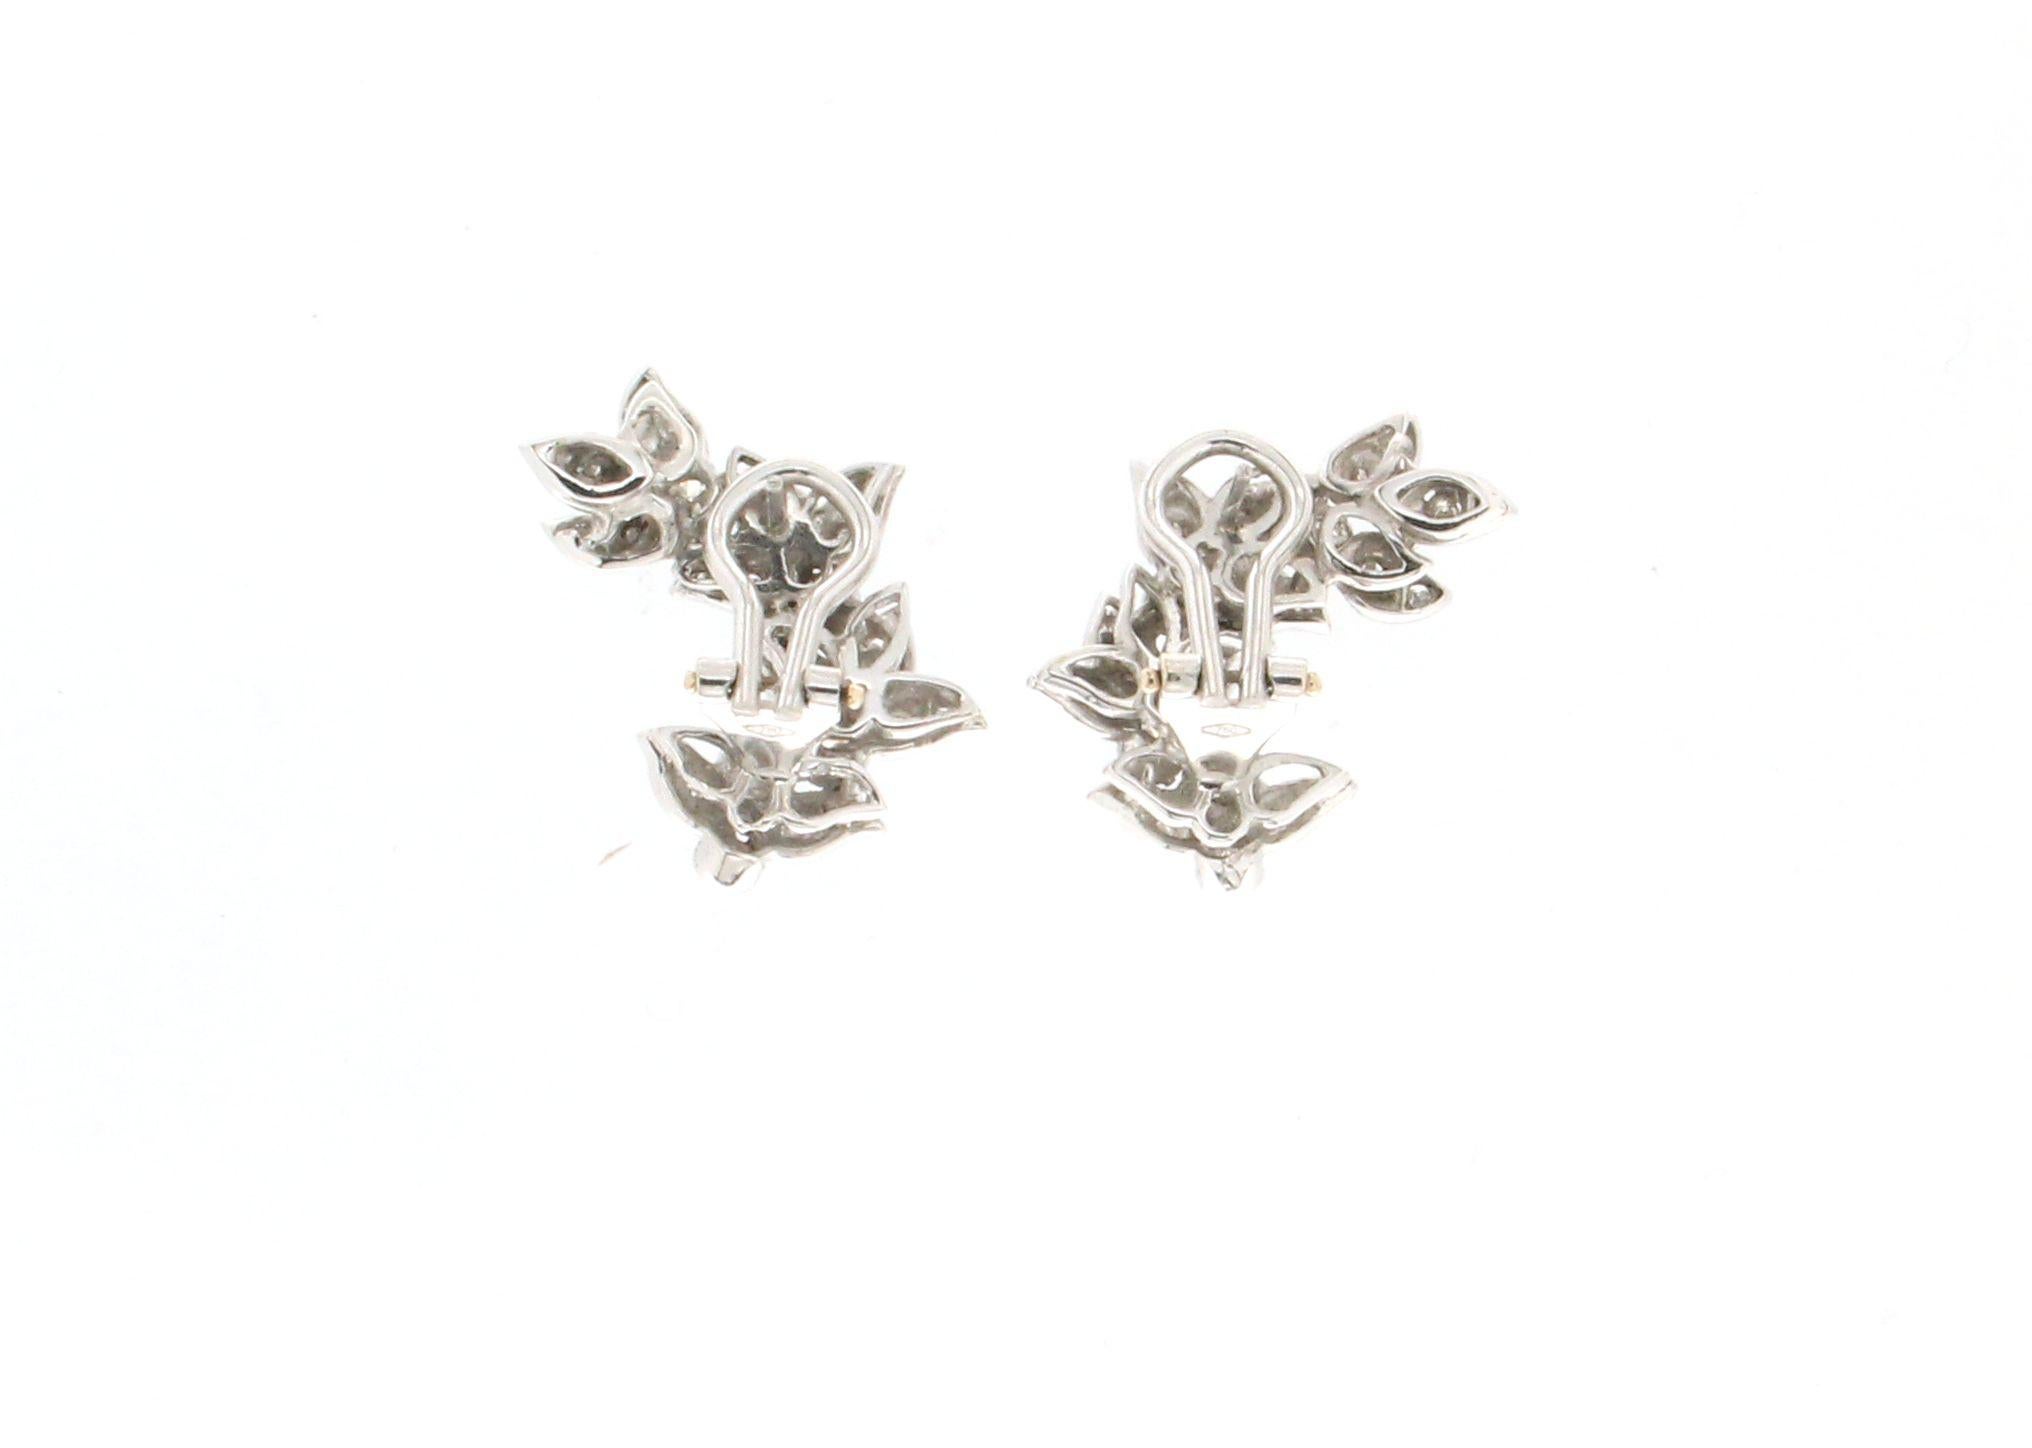 Leaves 18 karat White Gold Diamonds Stud Earrings

Earrings weight 10.90 grams
Diamonds weight 1.27 karat